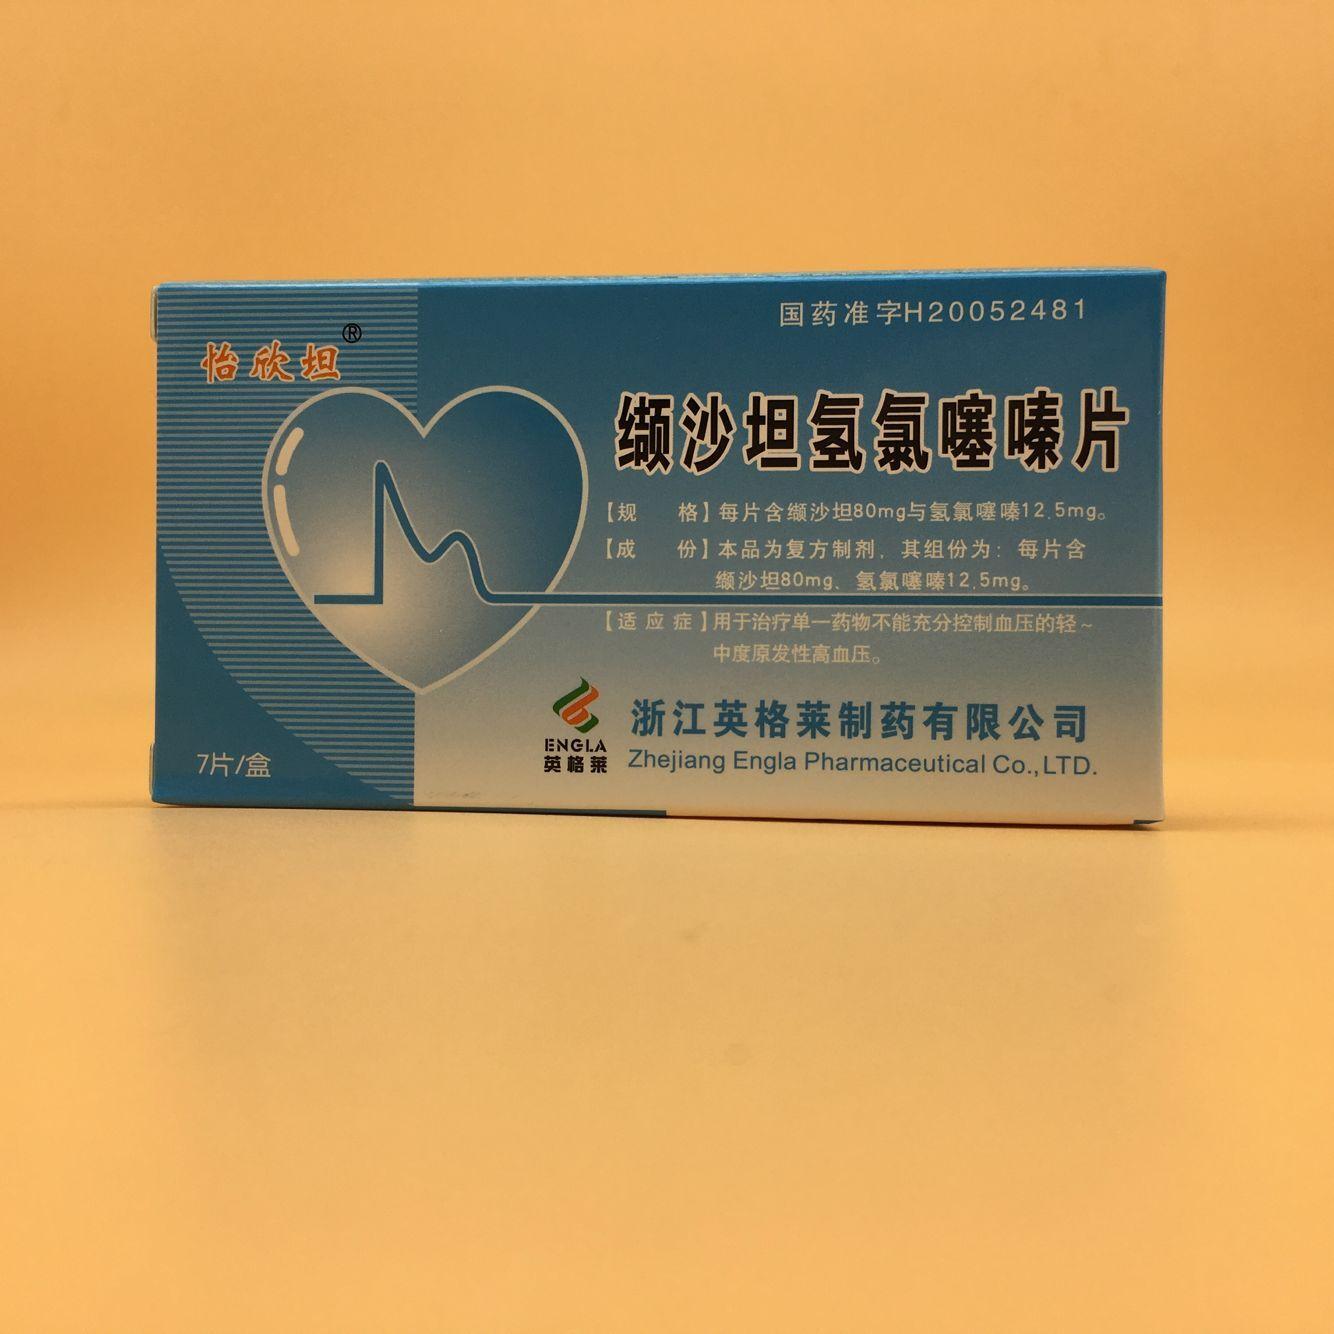 海捷亚新老包装对比 – 欧加隆(上海)医药科技有限公司